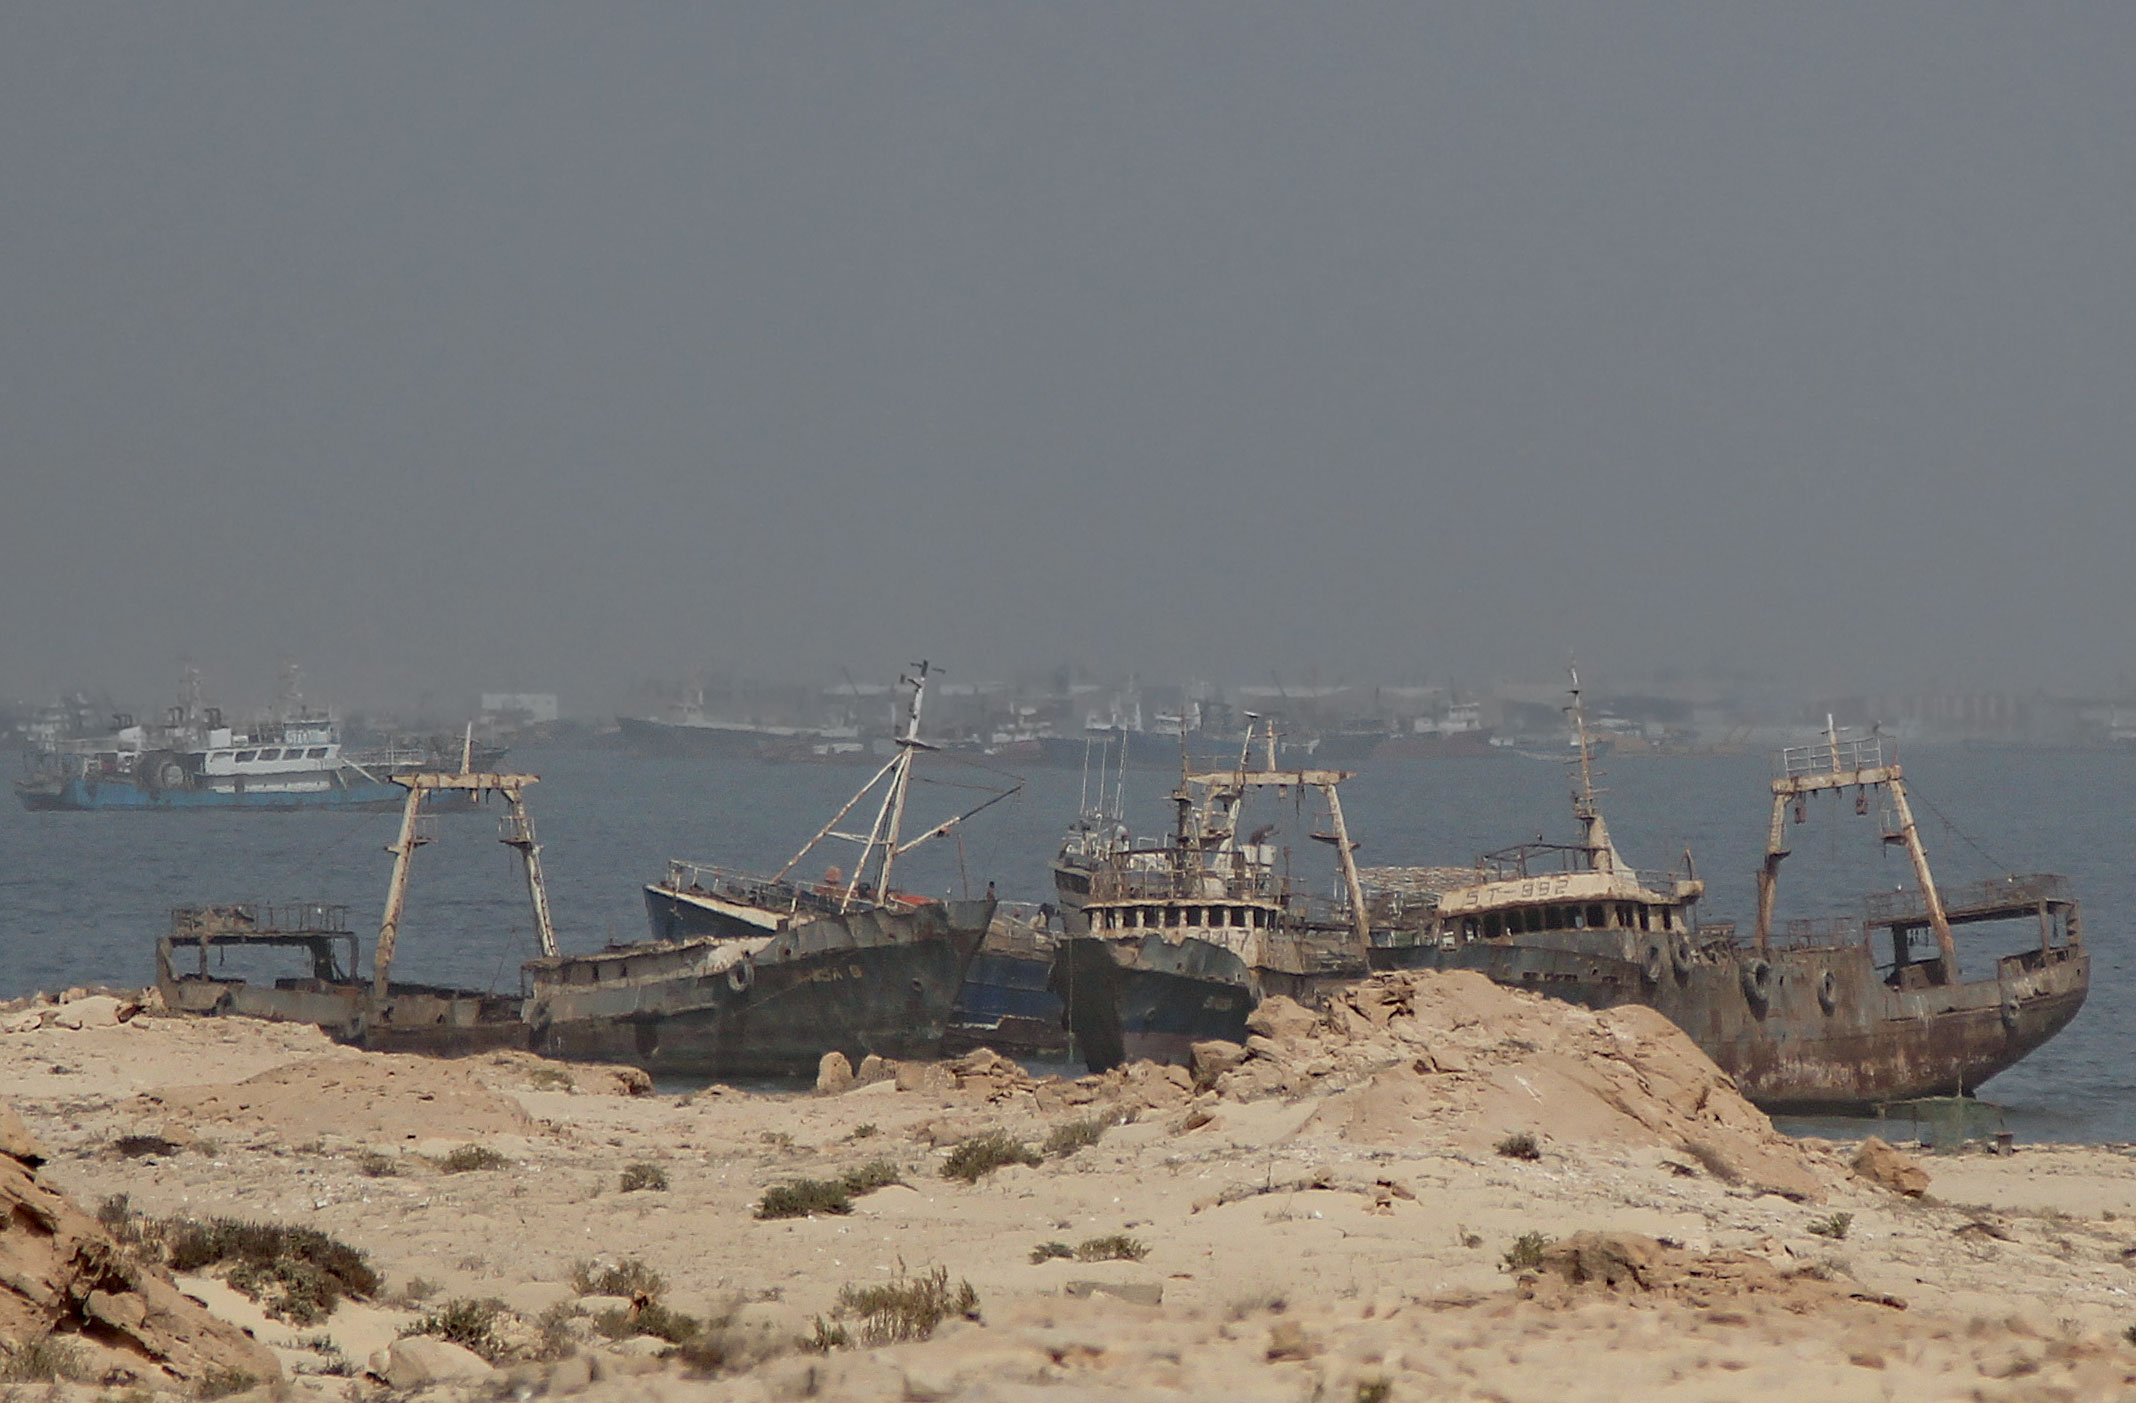 Mauretania.Zatoka wraków,zwana również cmentarzyskiem wraków.Nouadhibou